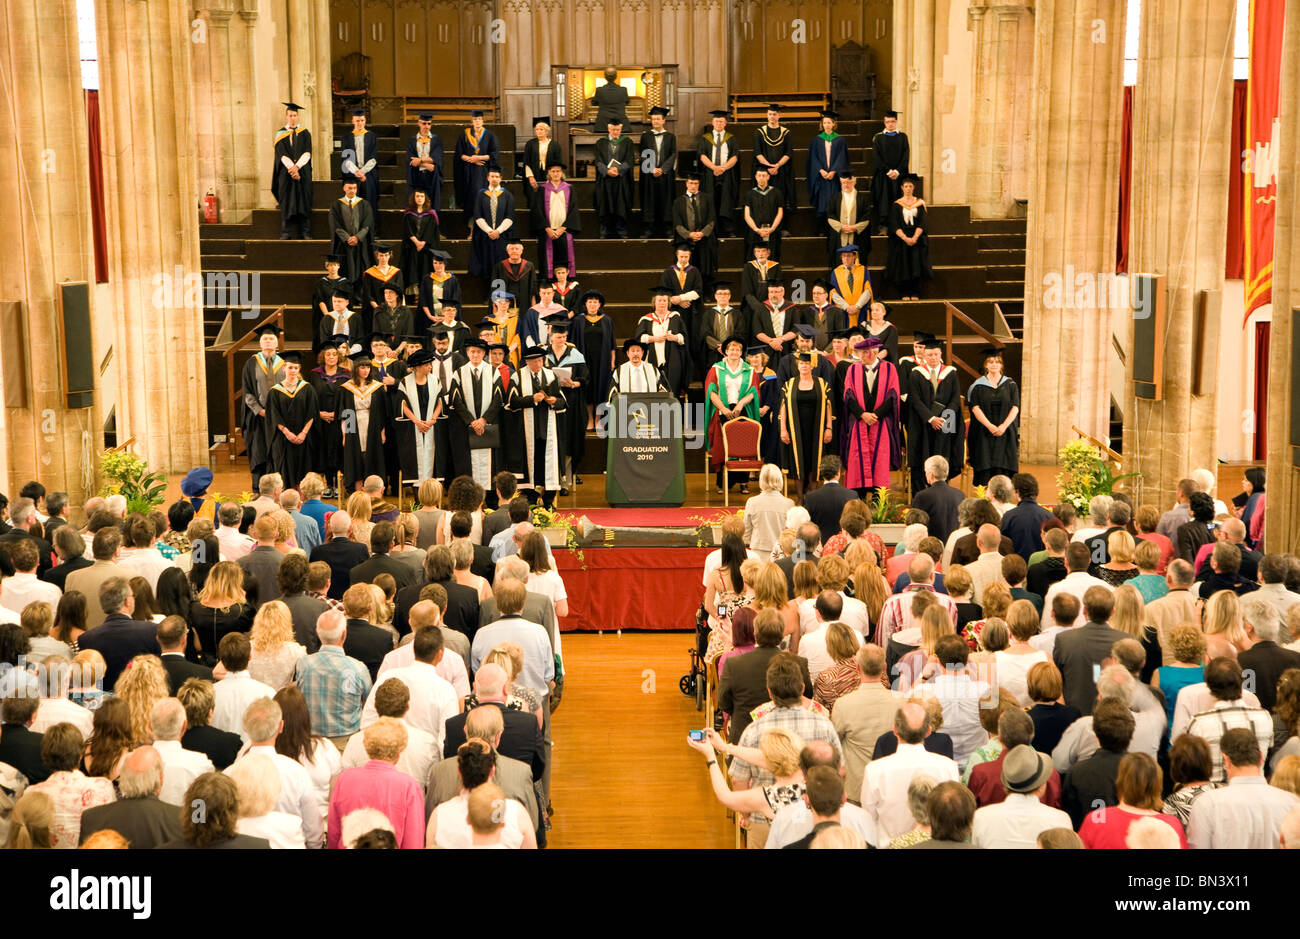 Le jour de graduation University College of the Arts Norwich Angleterre Banque D'Images